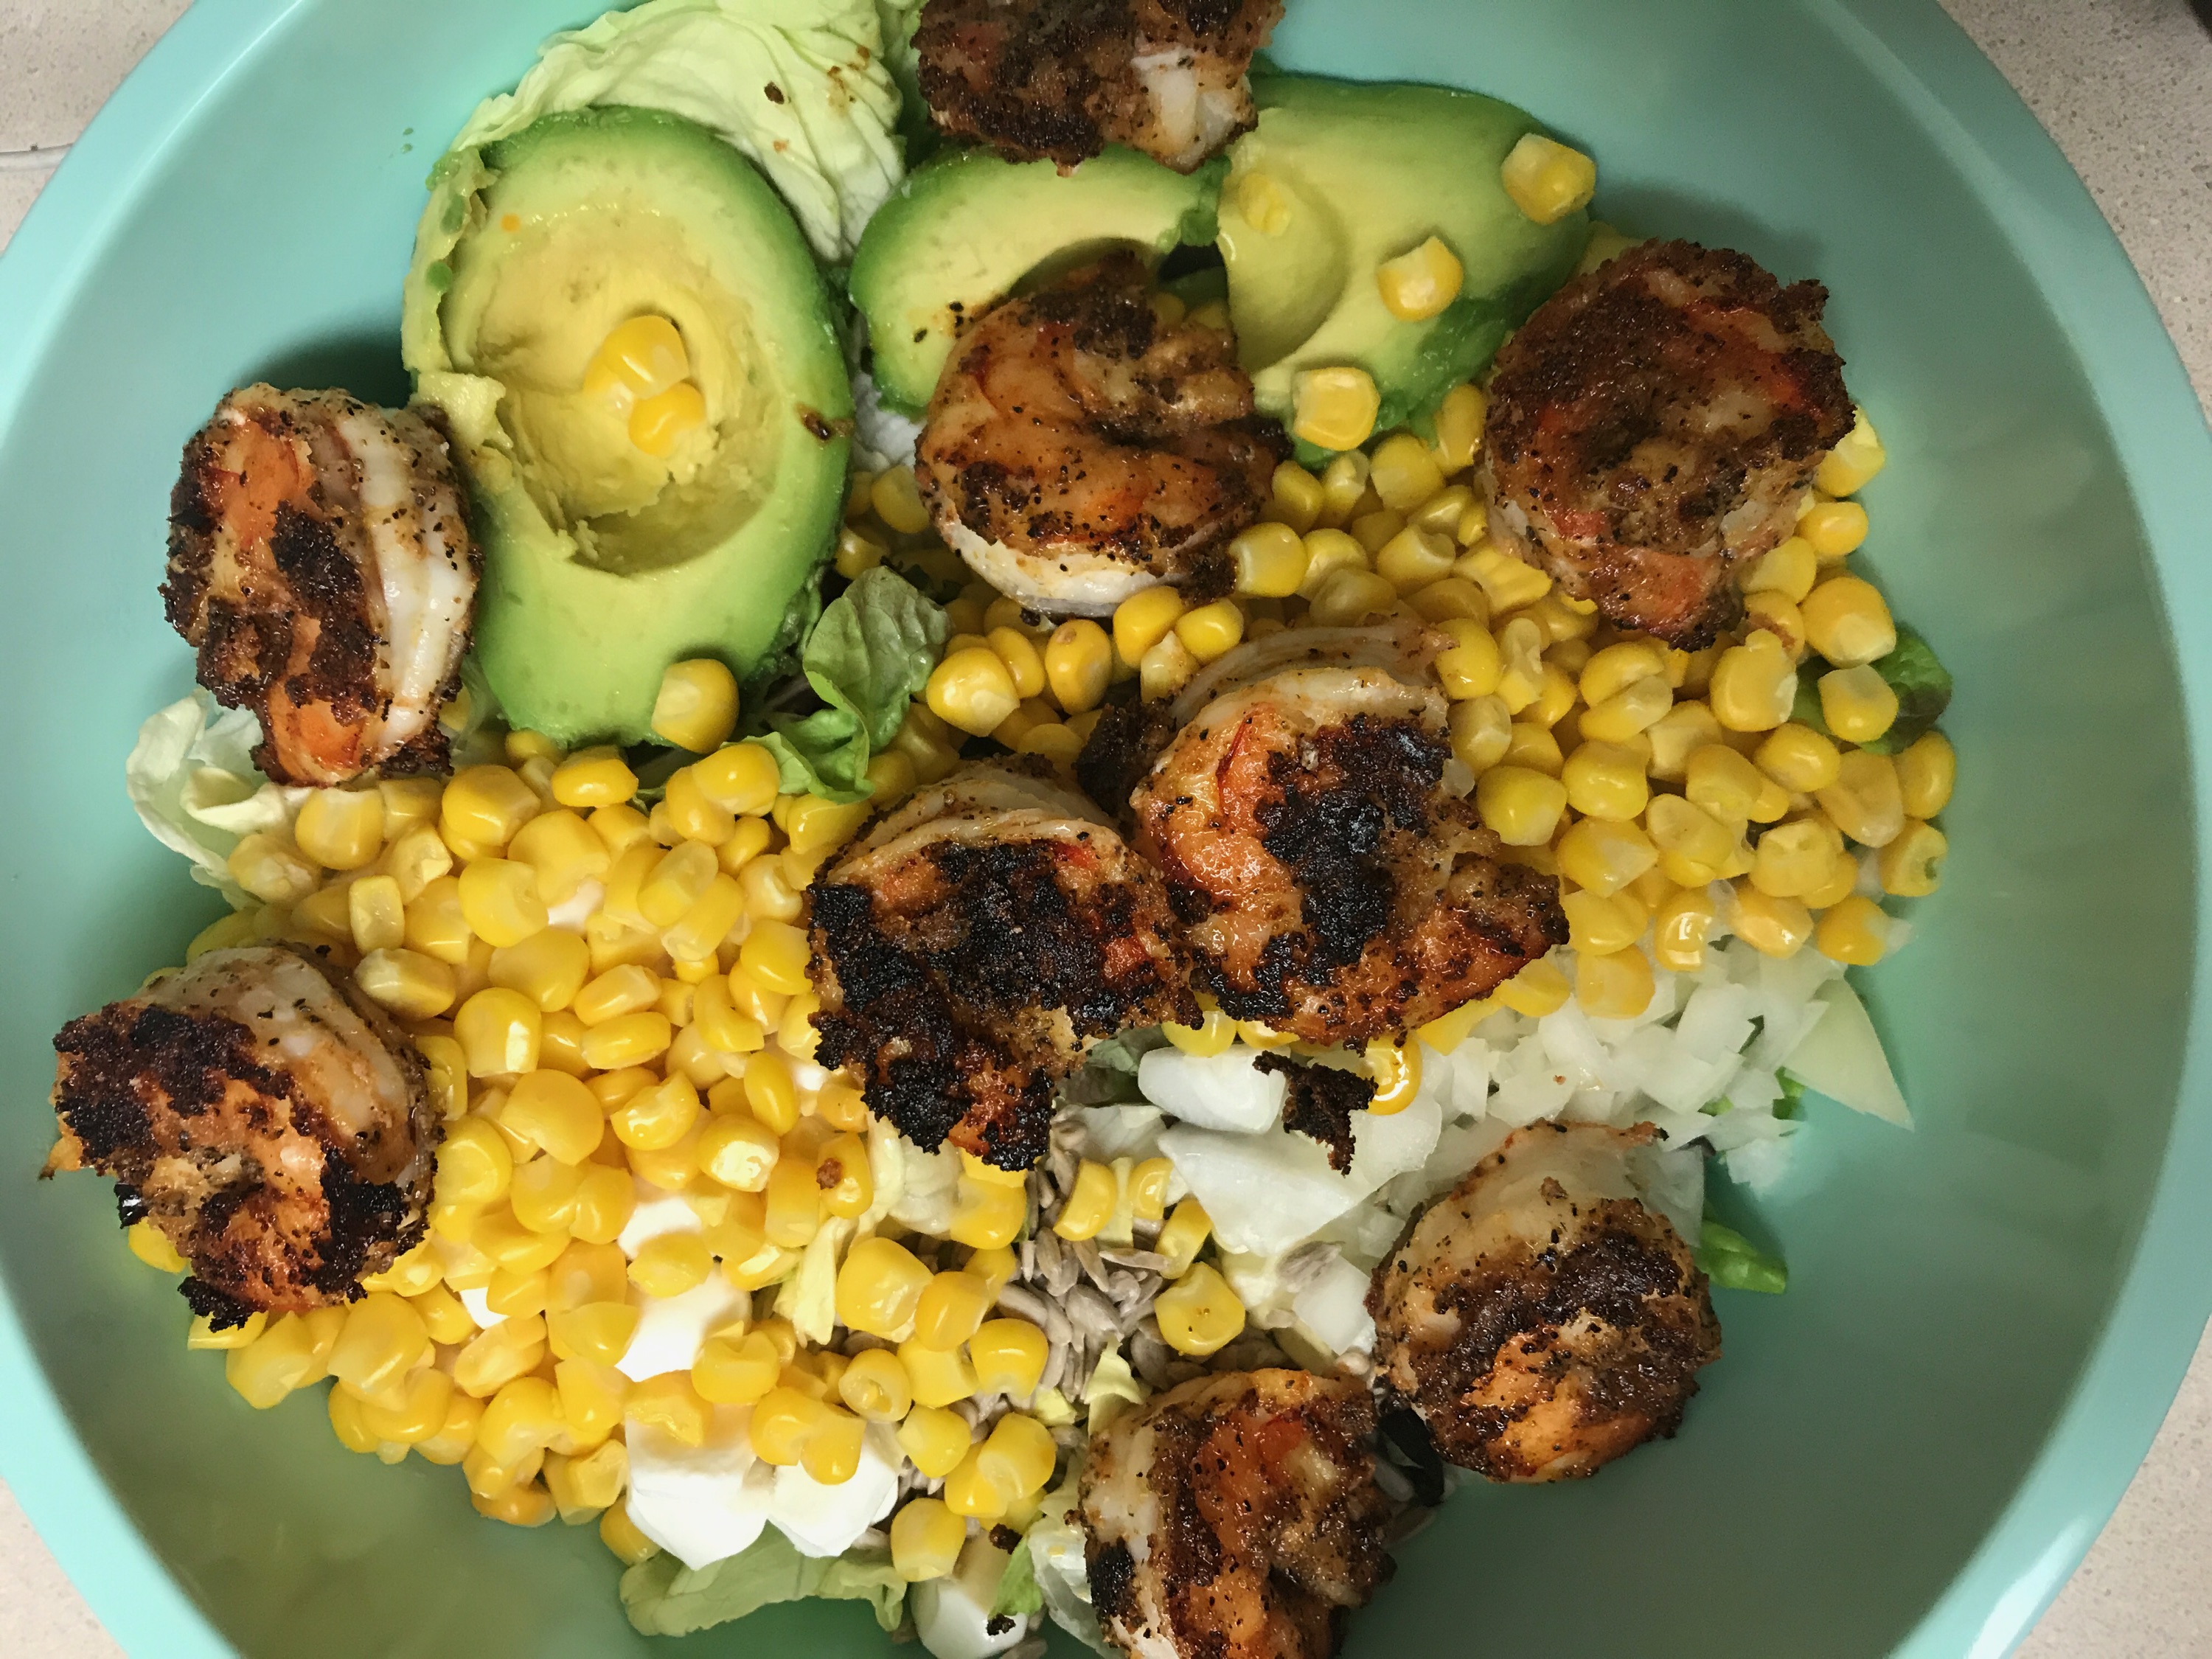 Blackened Shrimp Salad - Meal Planning + What We Ate Last Week - Communikait by Kait Hanson